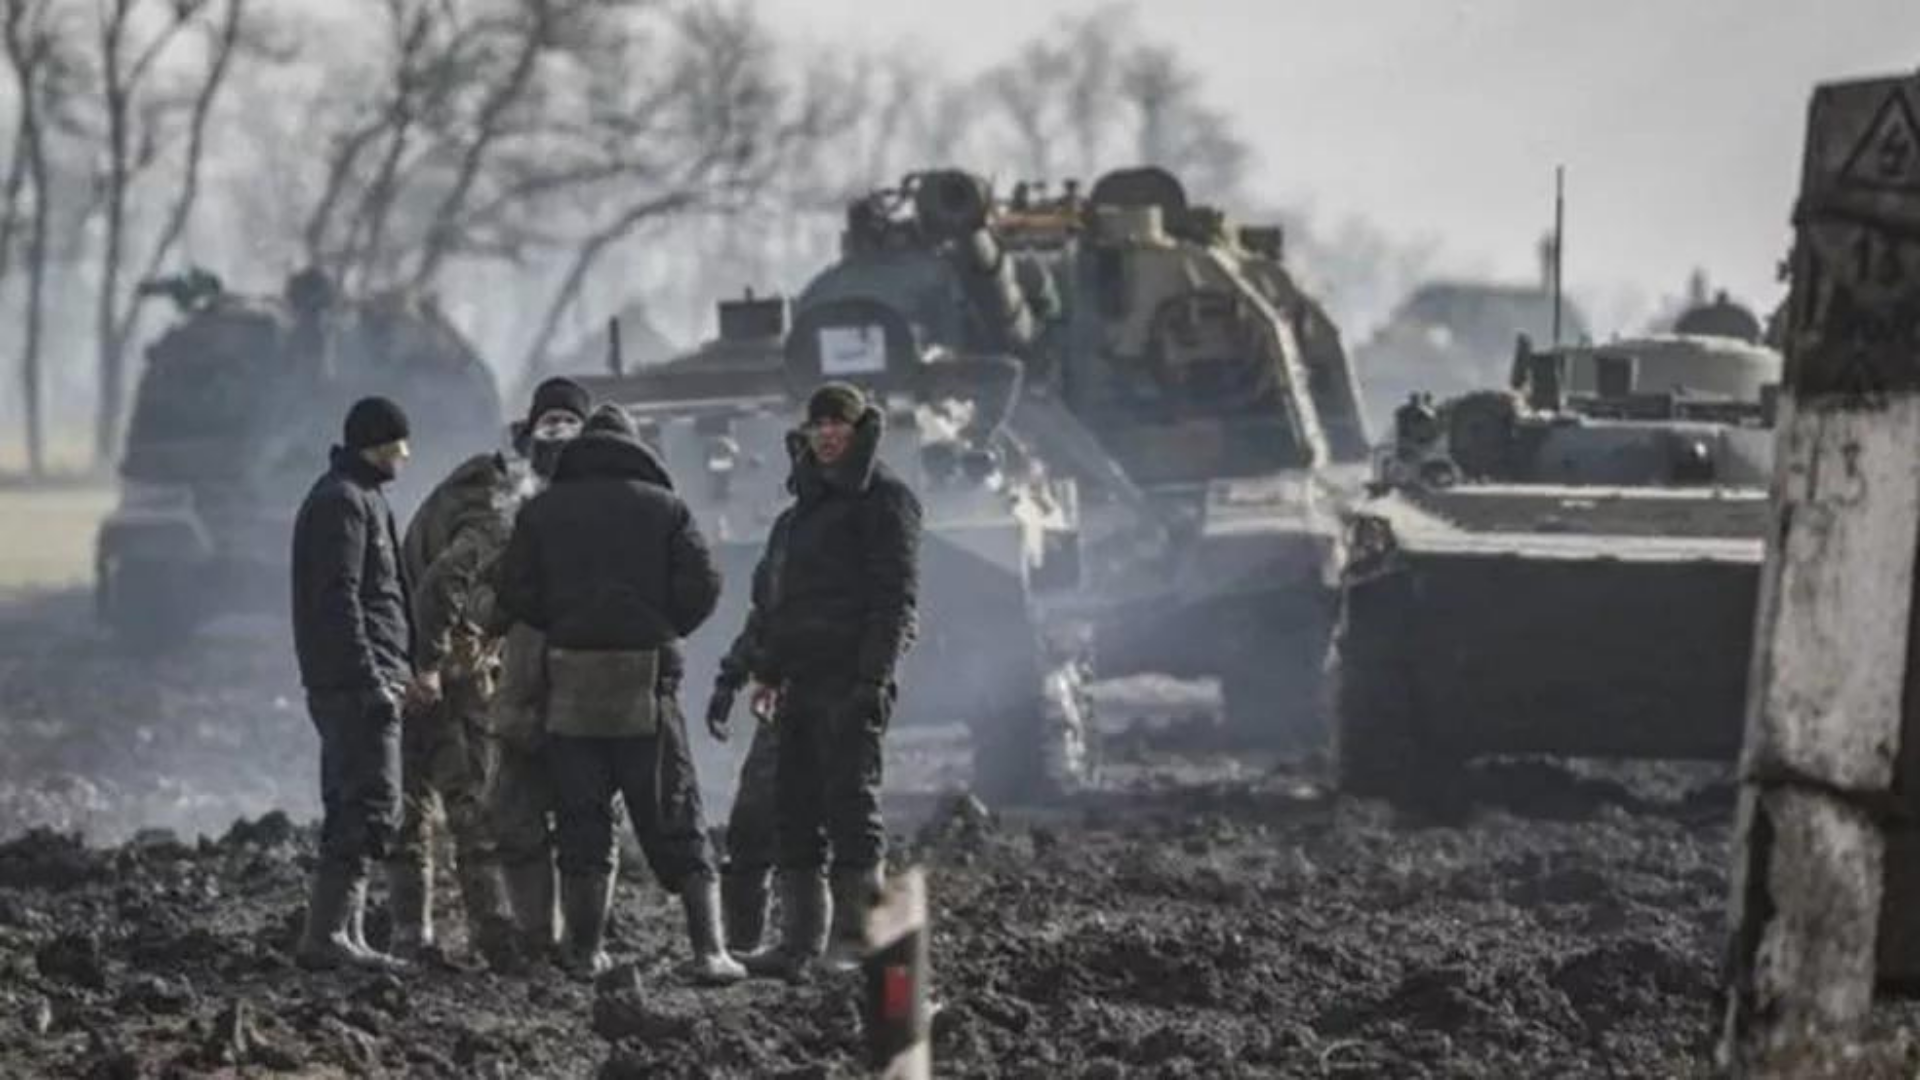 Agora vai: Guerra na Ucrânia pode ajudar 3ª via, diz o Valor. Foto de soldados em uma região atacada, ele estão na frente de um tanque de guerra.